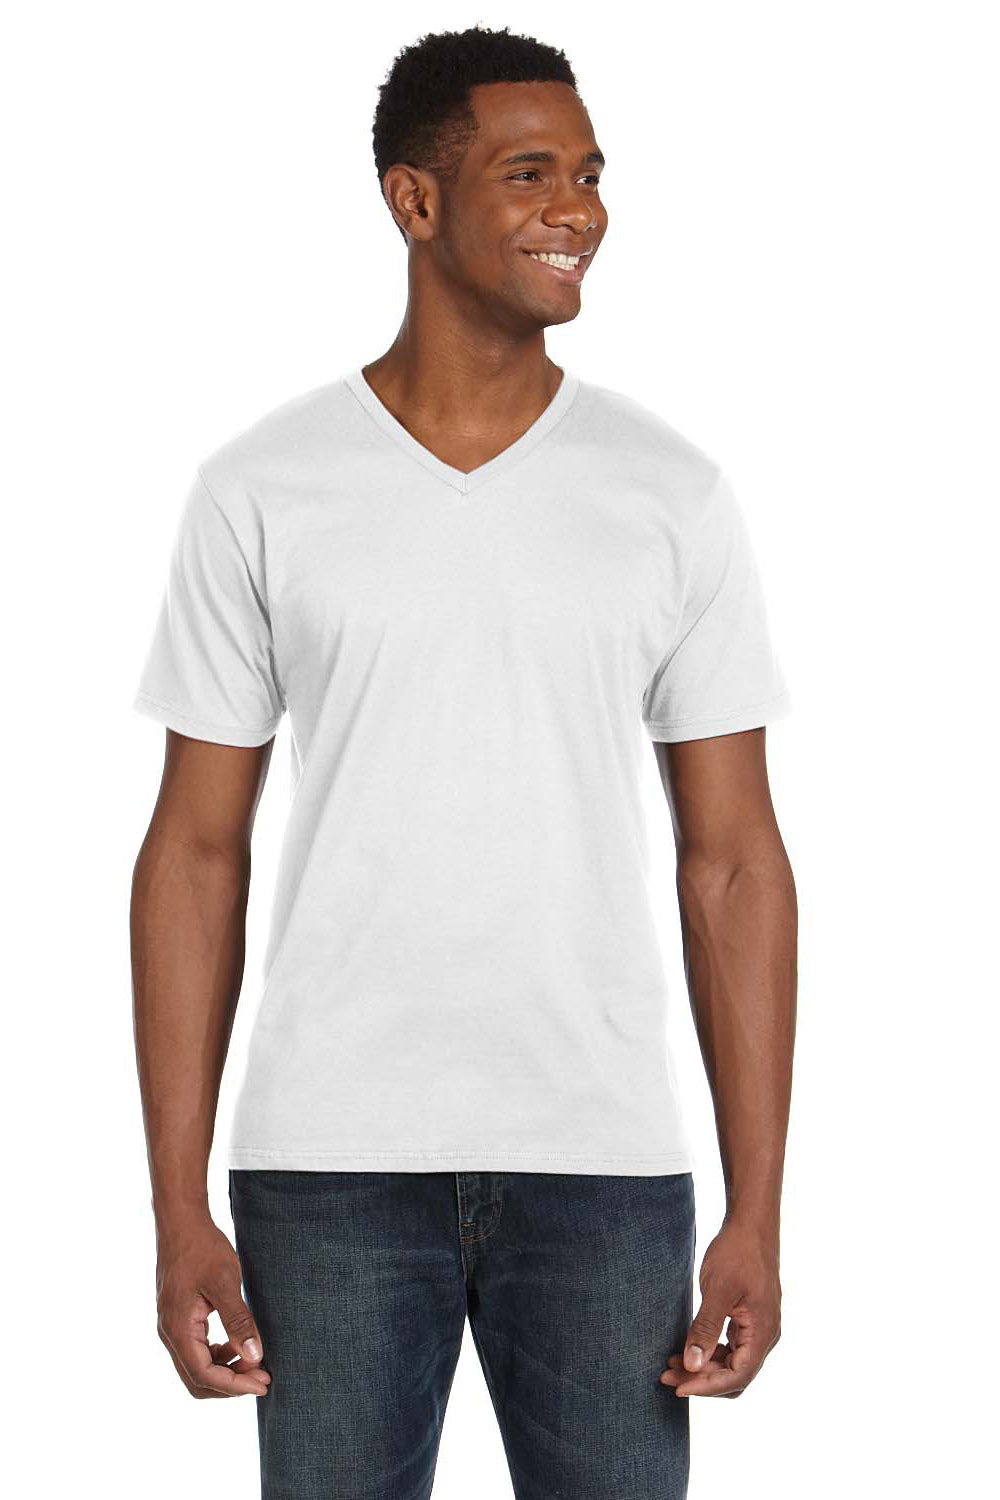 Anvil 982 Mens Short Sleeve V-Neck T-Shirt White Front